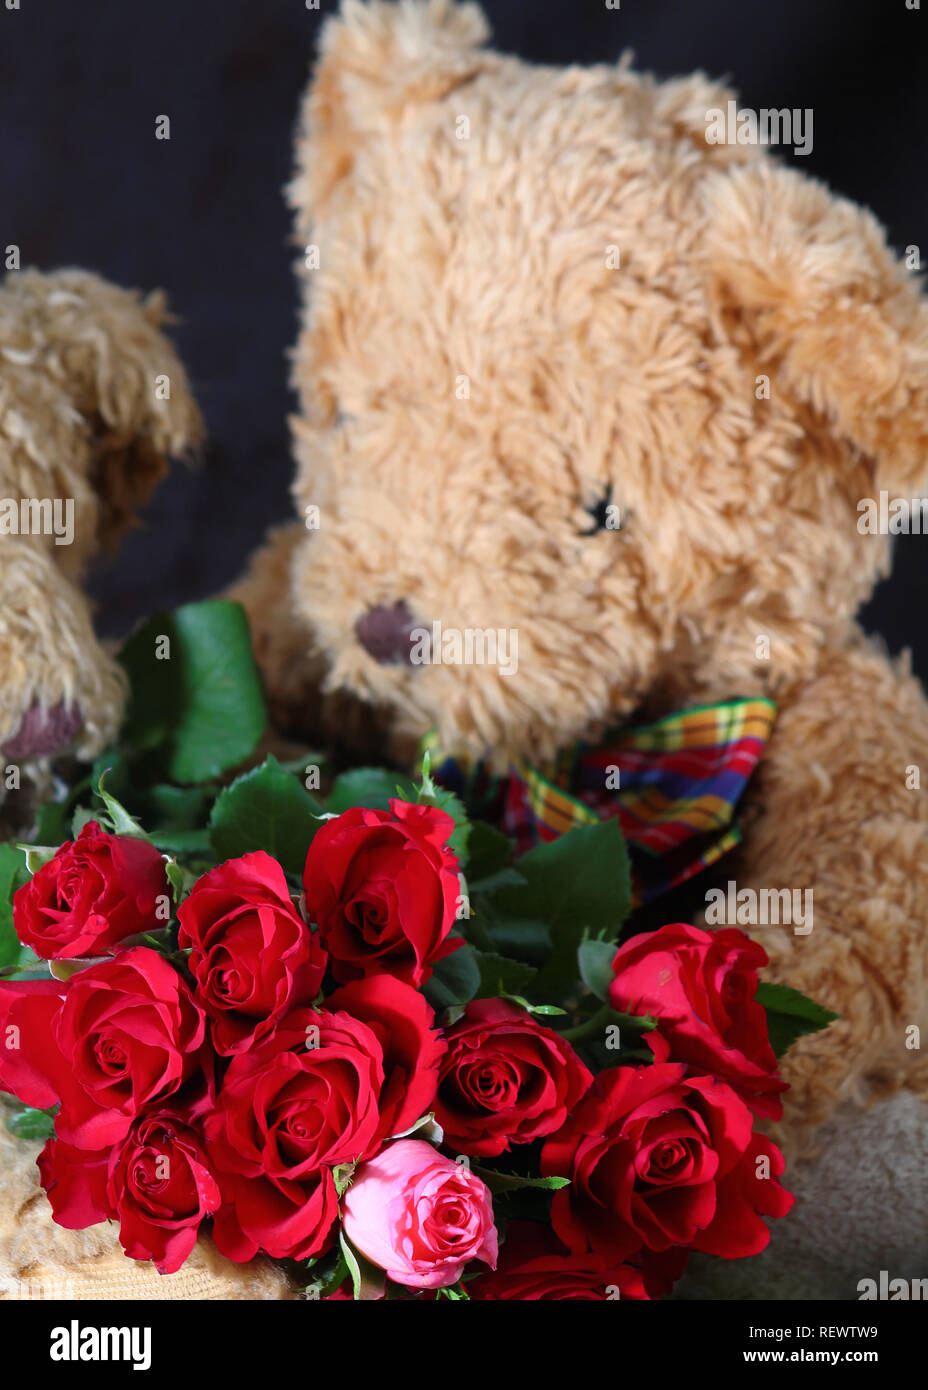 Mascotte, Rose Rosse E Cuori Dell'orsacchiotto Per Il San Valentino  Fotografia Stock - Immagine di angeli, regalo: 137089904